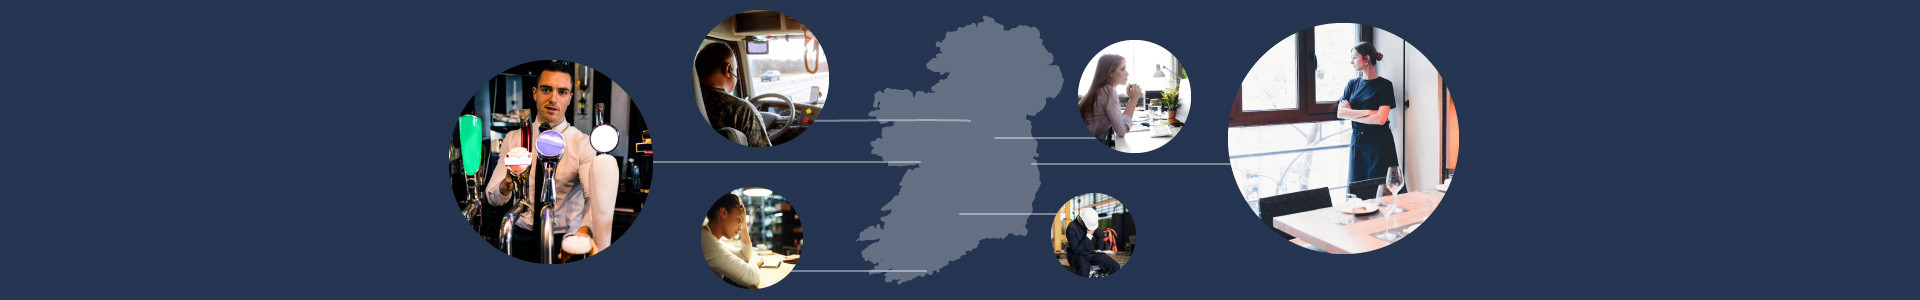 Ireland’s largest learning website helps newly unemployed Irish Workforce upskill